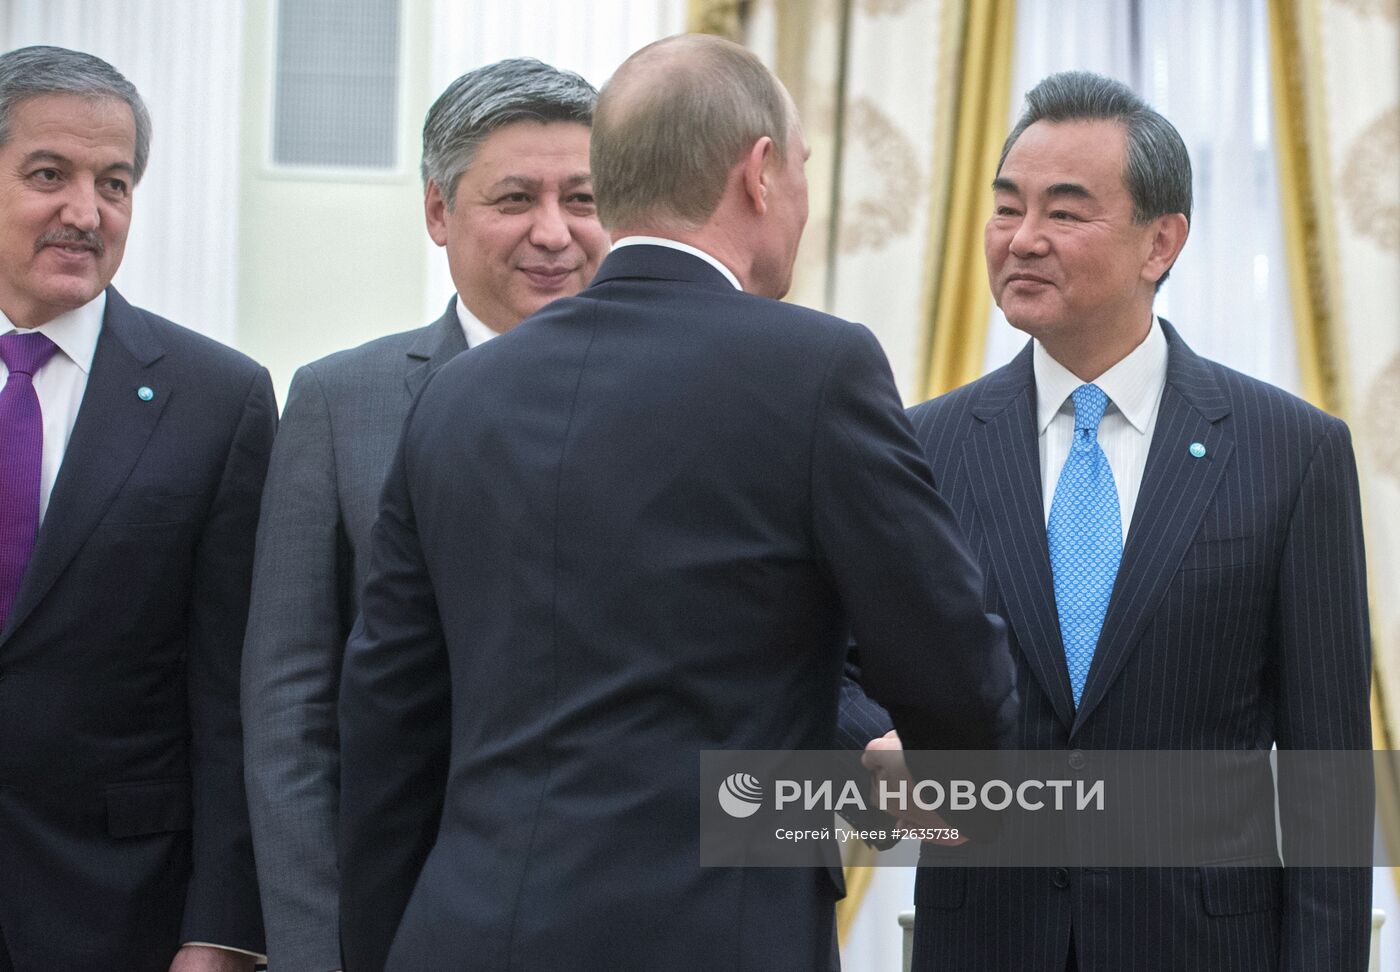 Президент РФ В.Путин принял в Кремле участников заседания Совета глав МИД стран ШОС